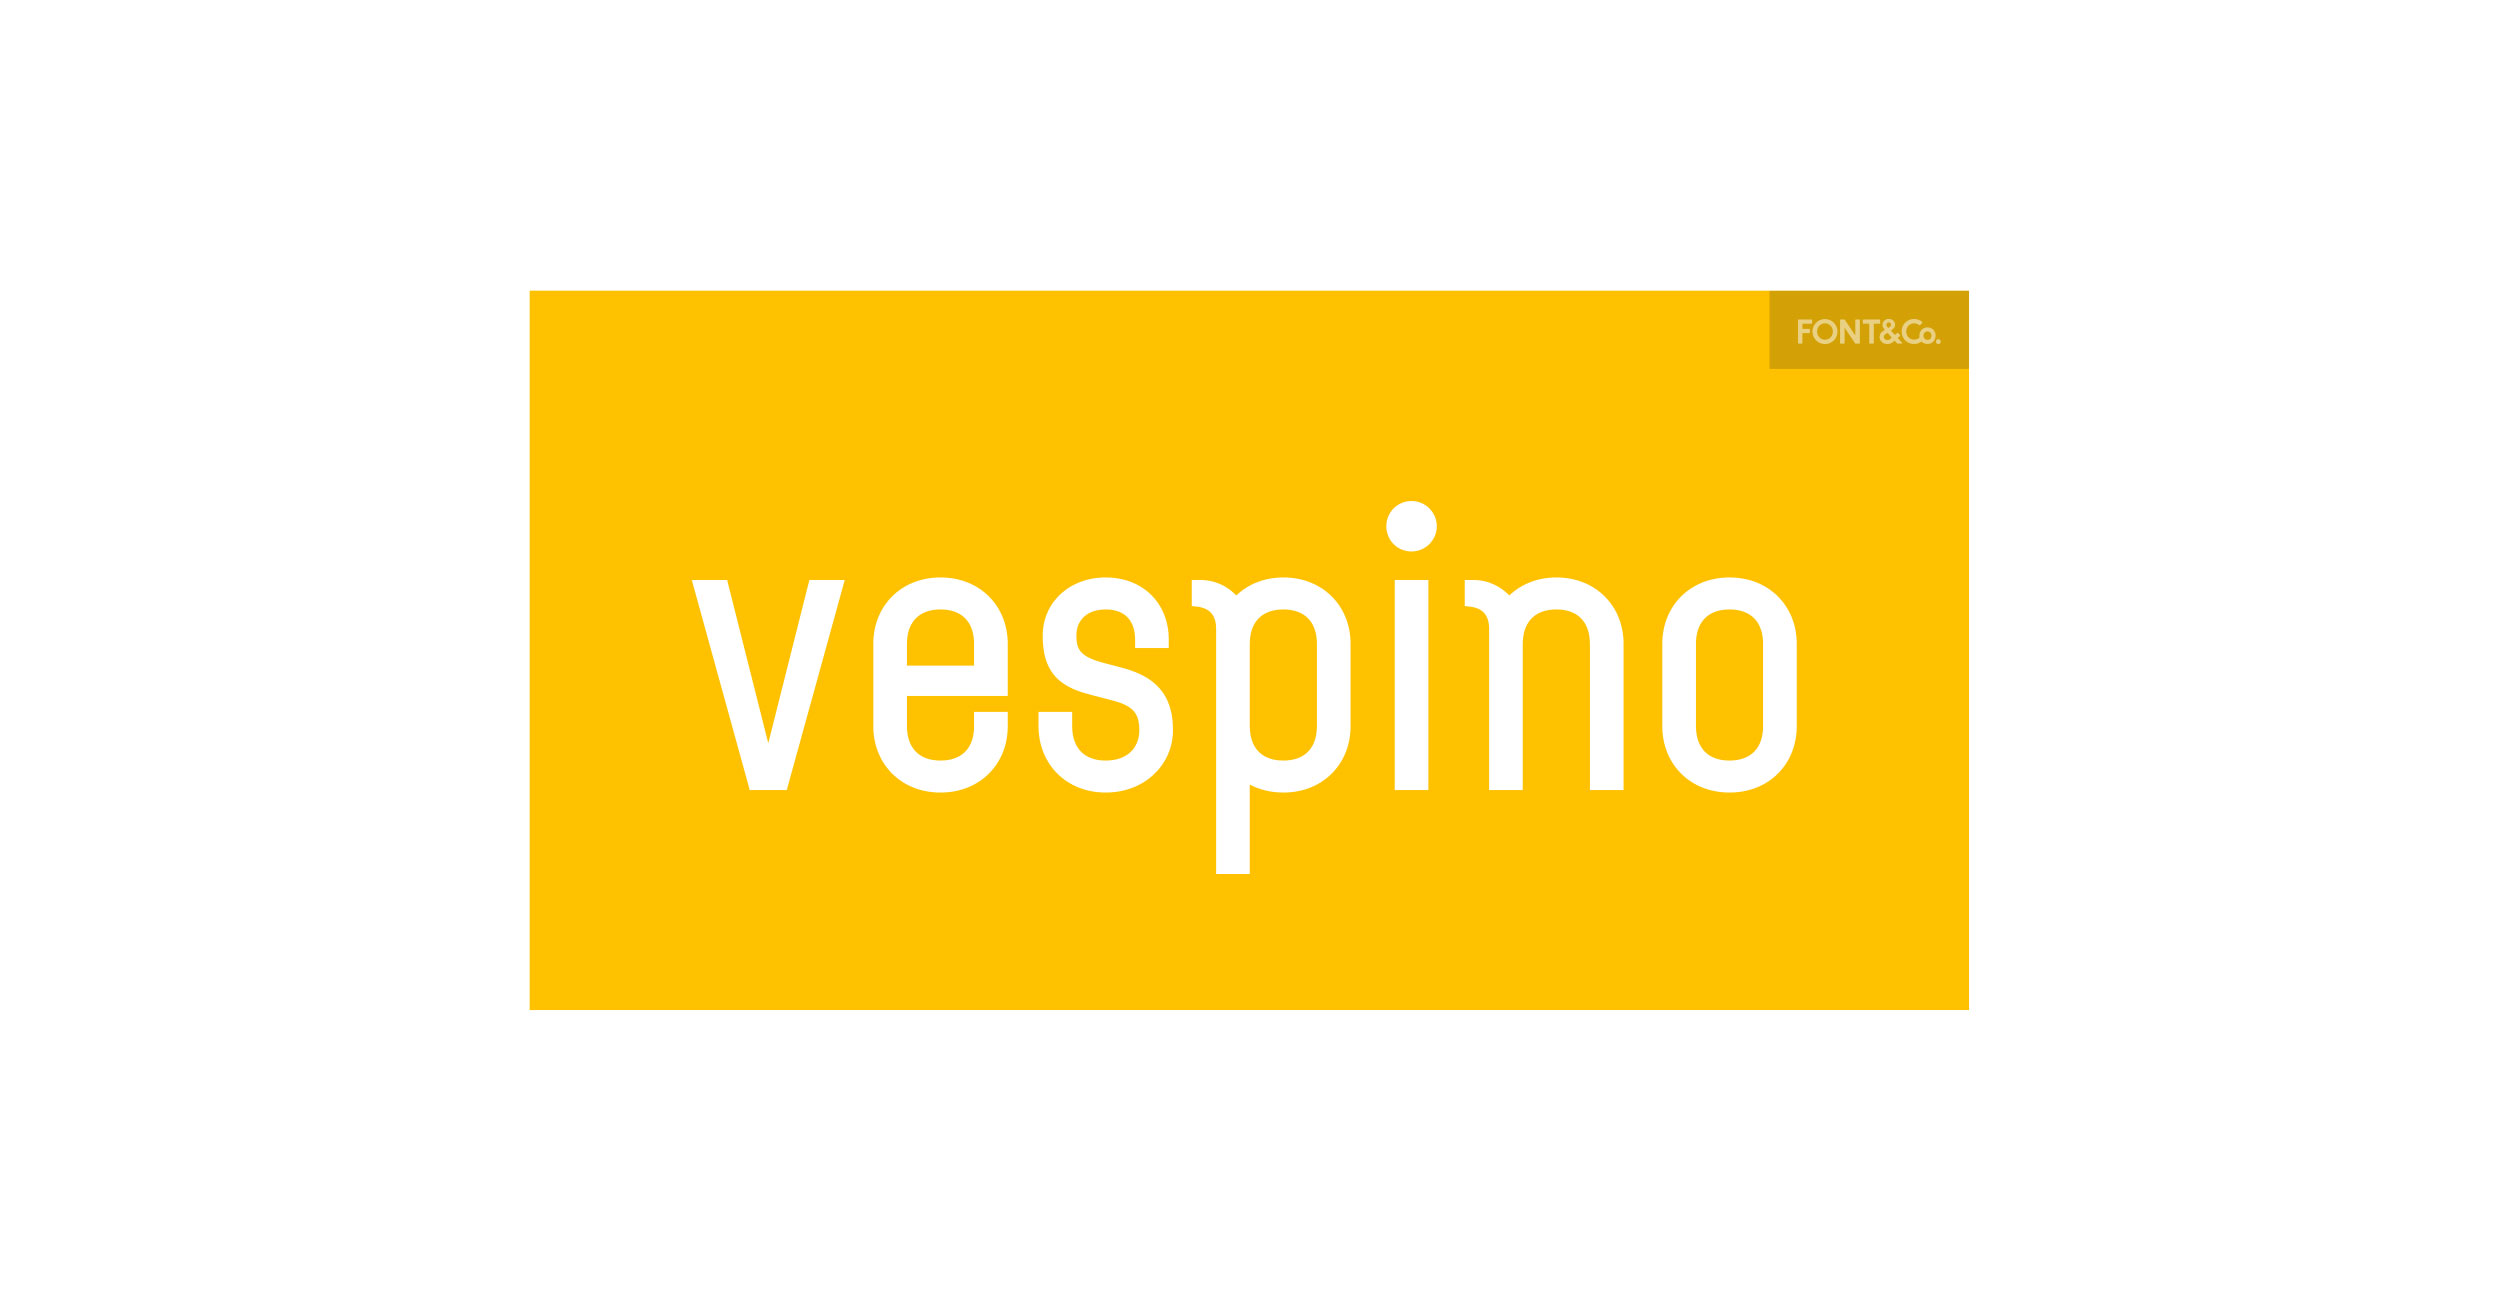 Font&Co – Vespino